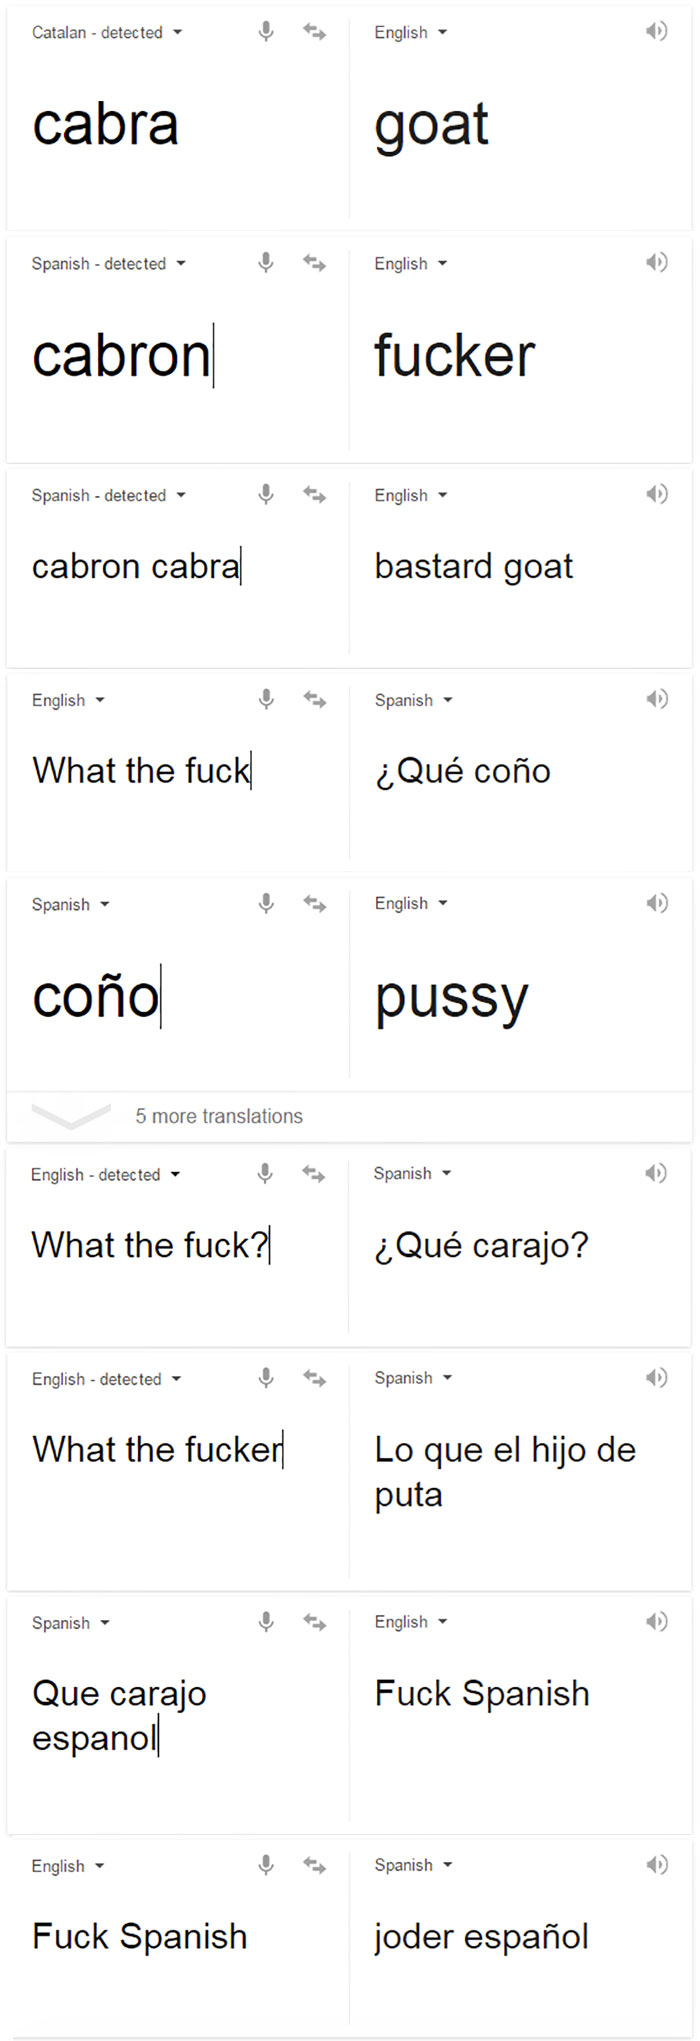 50 Hilarious Memes About Spanish Language That Will Make You JAJAJA